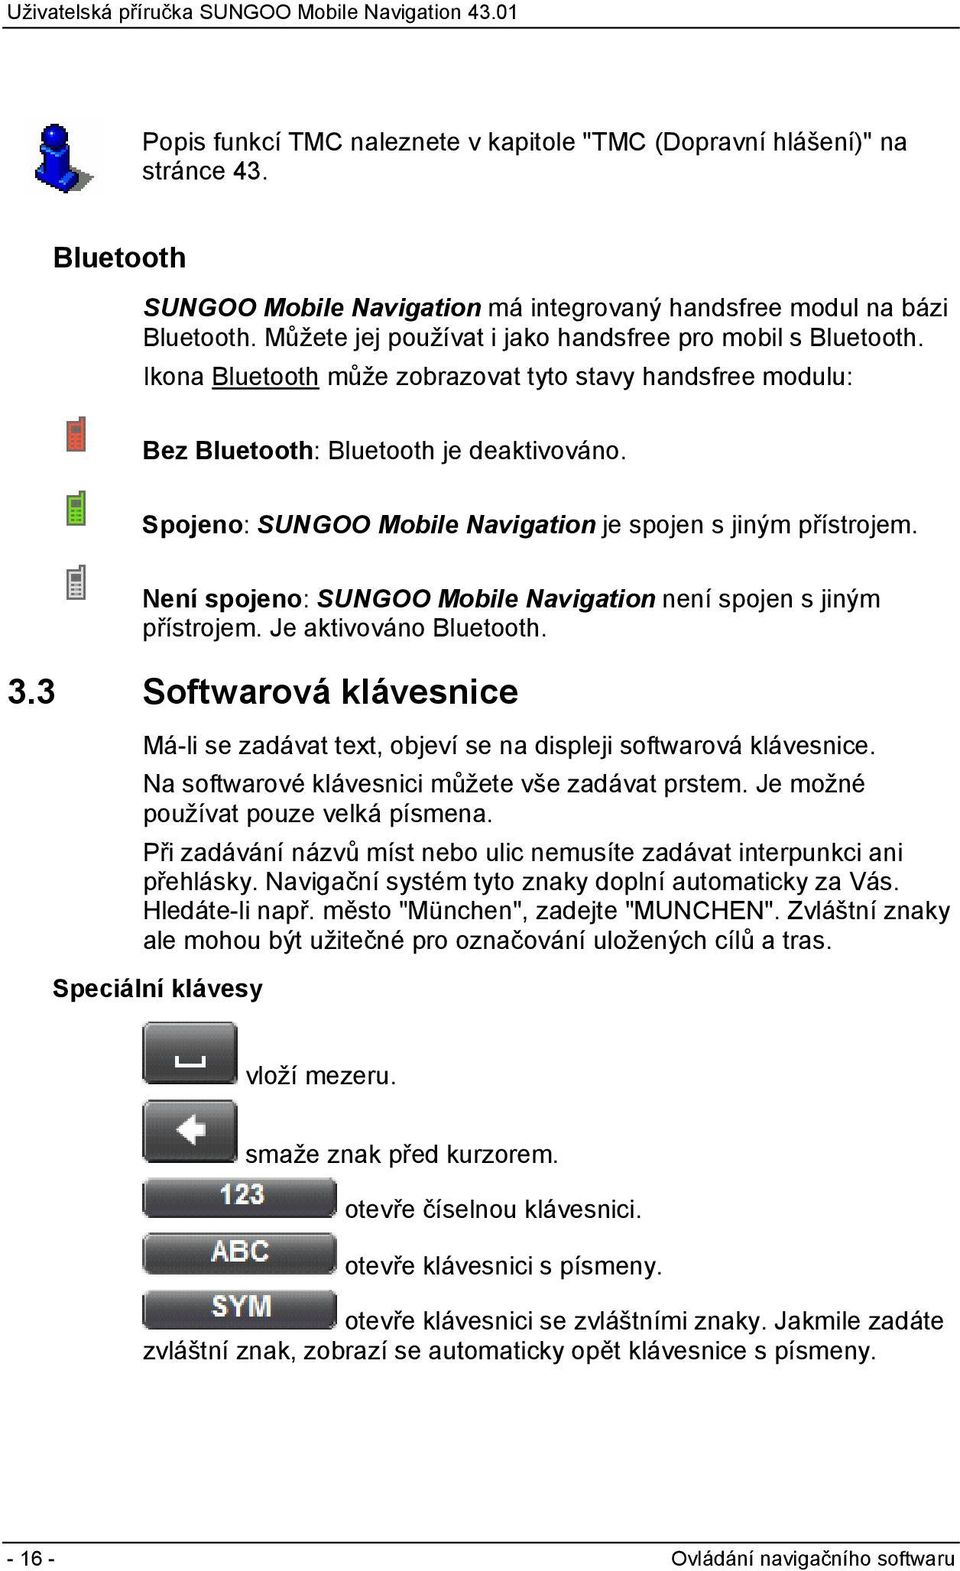 Spojeno: SUNGOO Mobile Navigation je spojen s jiným přístrojem. Není spojeno: SUNGOO Mobile Navigation není spojen s jiným přístrojem. Je aktivováno Bluetooth. 3.